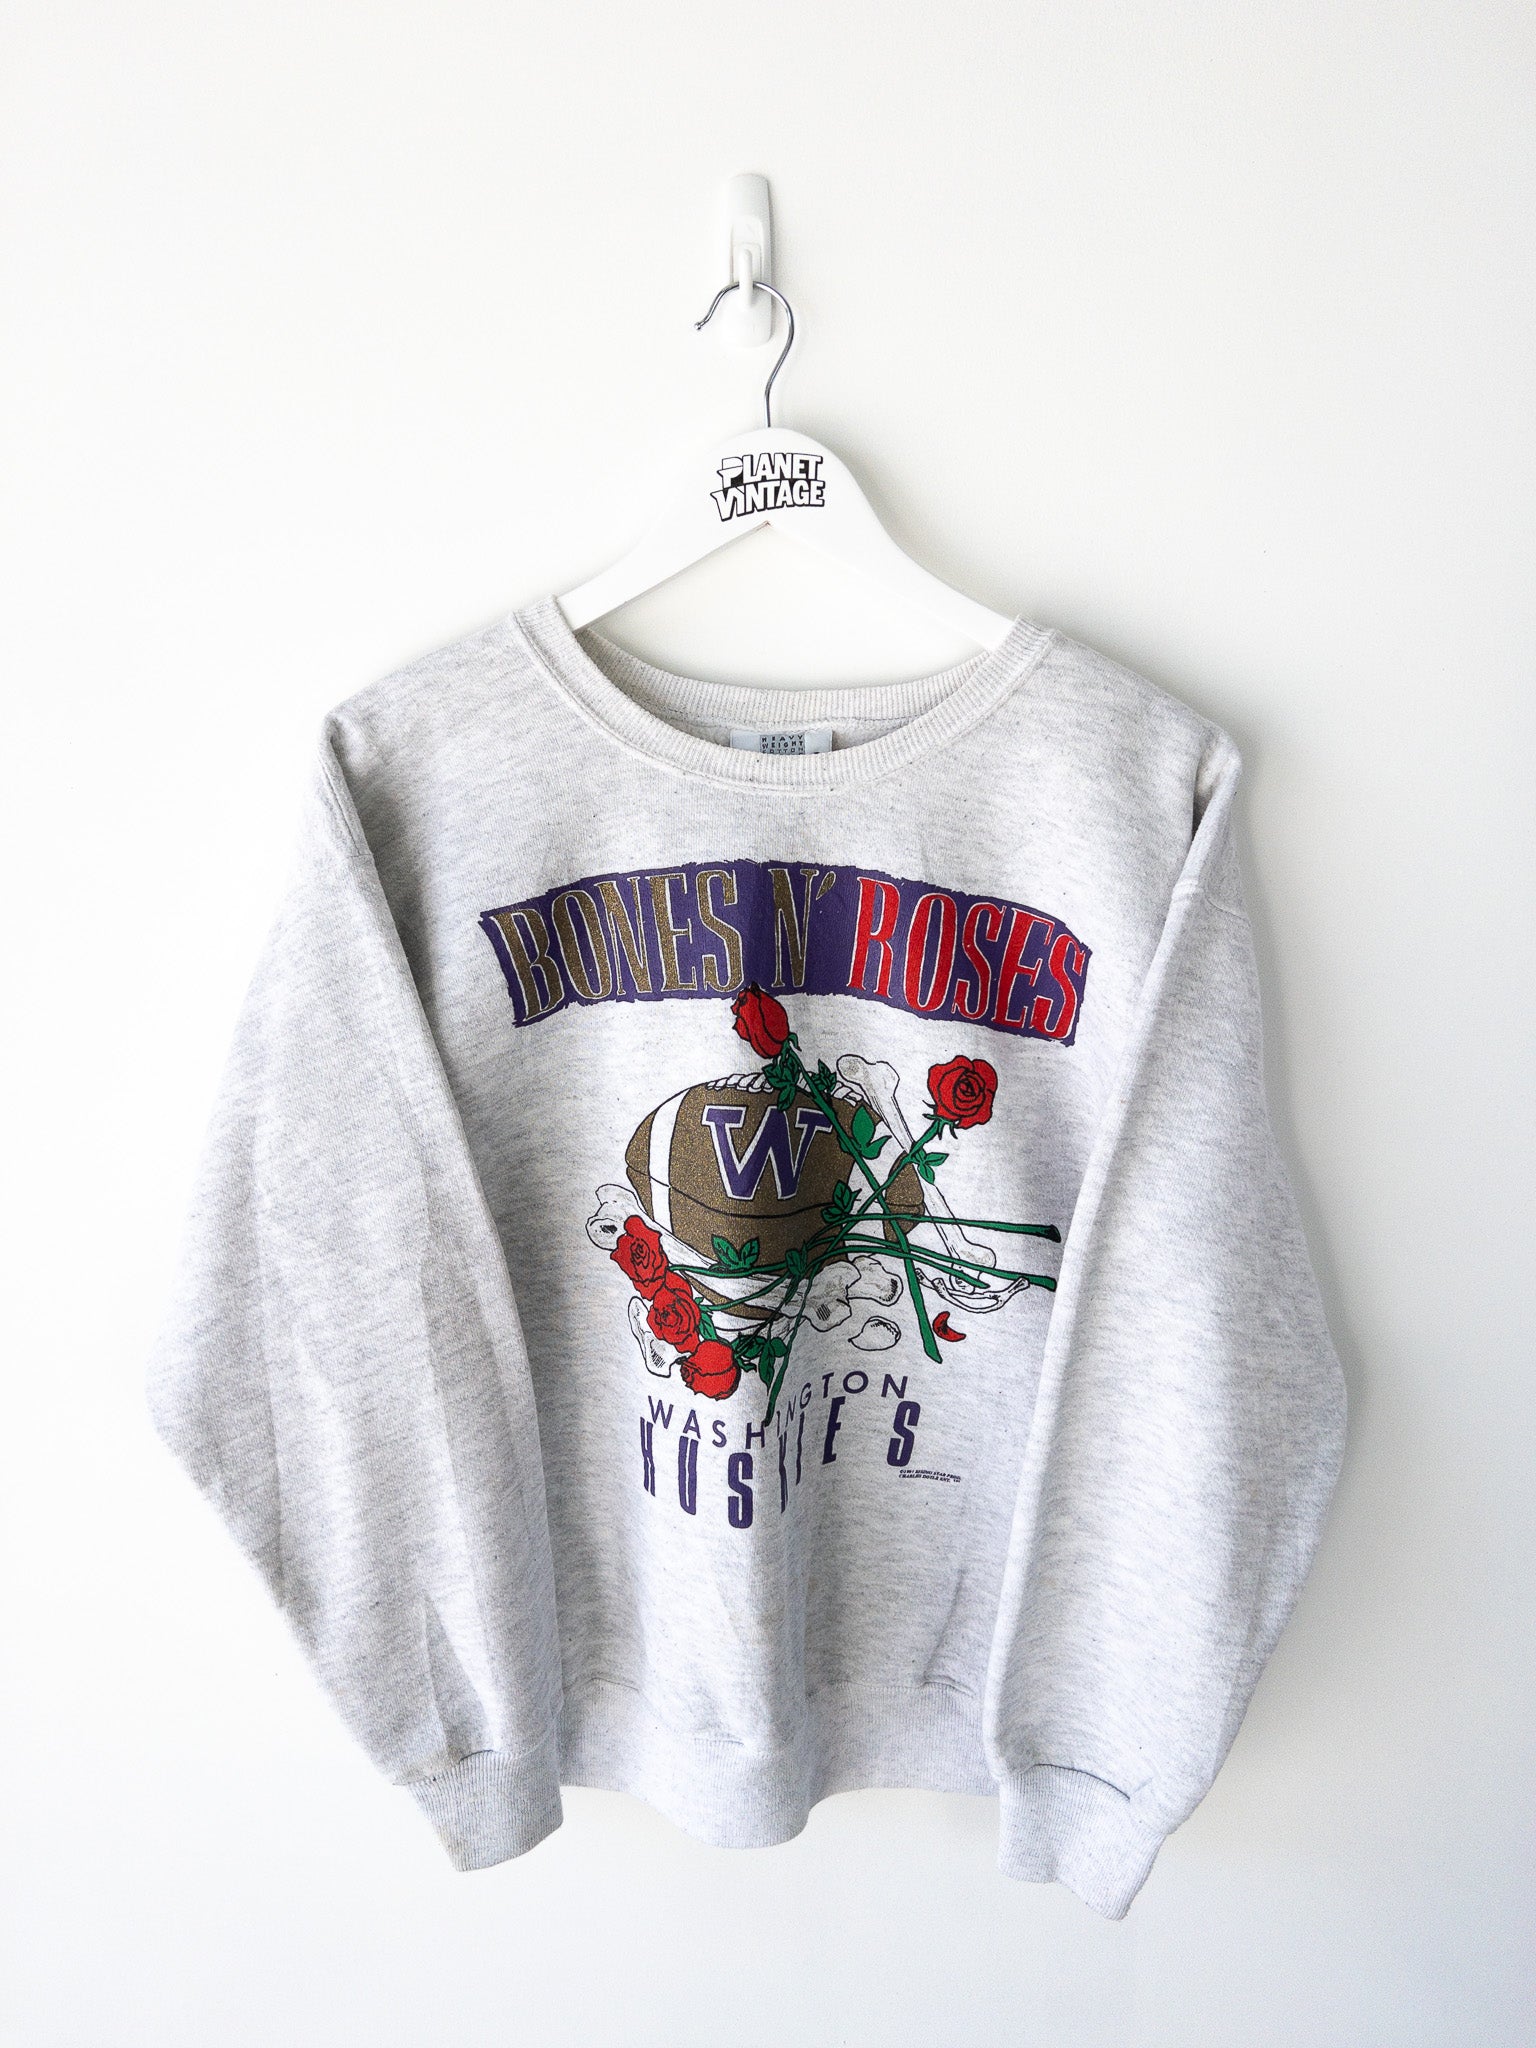 Vintage Washington Huskies 1991 Sweatshirt (L)